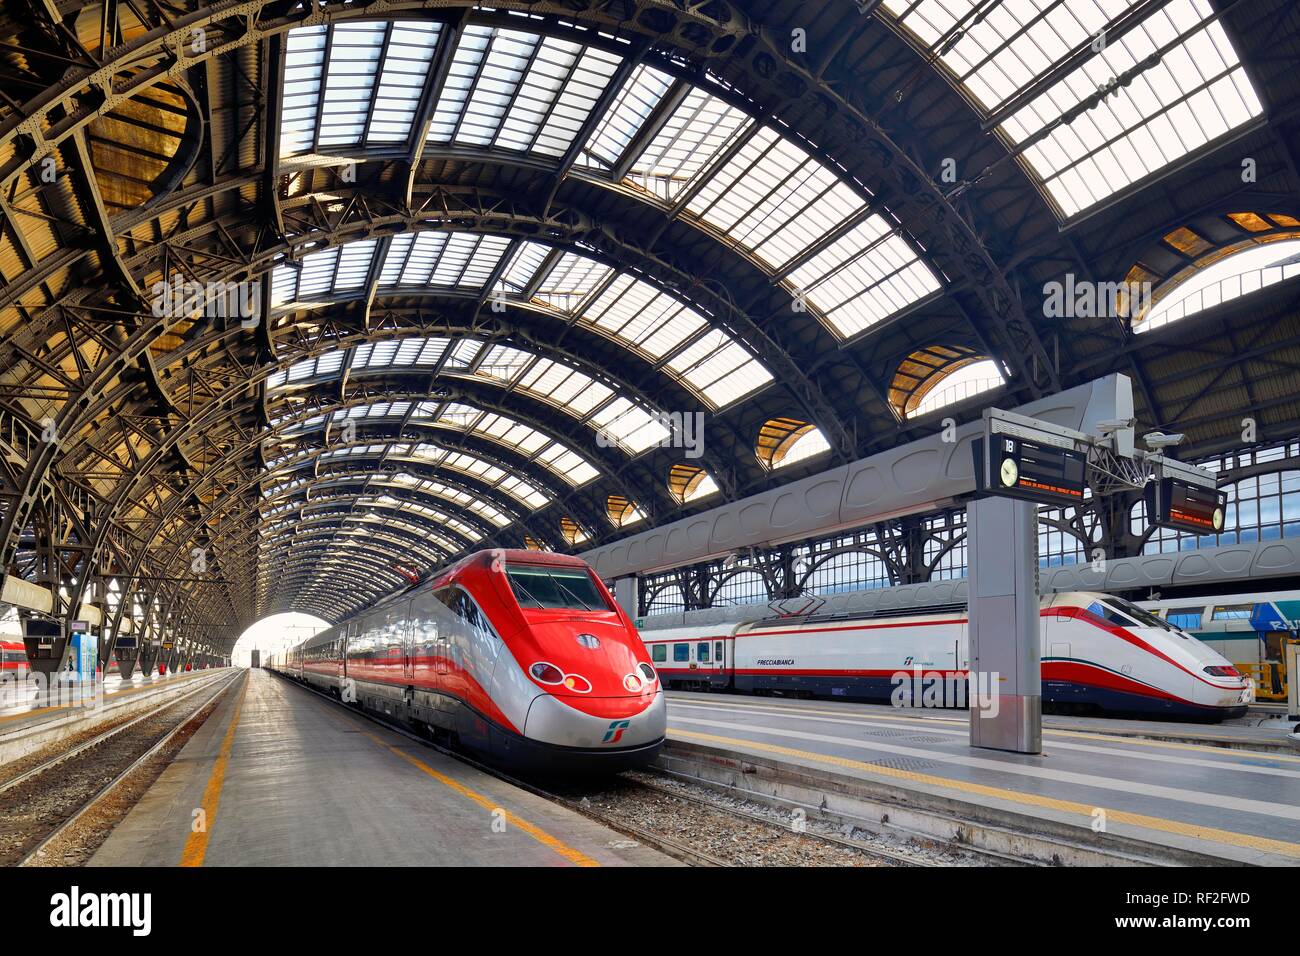 Hall de la estación central de tren, la estación de tren Milano Centrale, con trenes de alta velocidad Frecciarossa, Milán, Lombardía, Italia Foto de stock